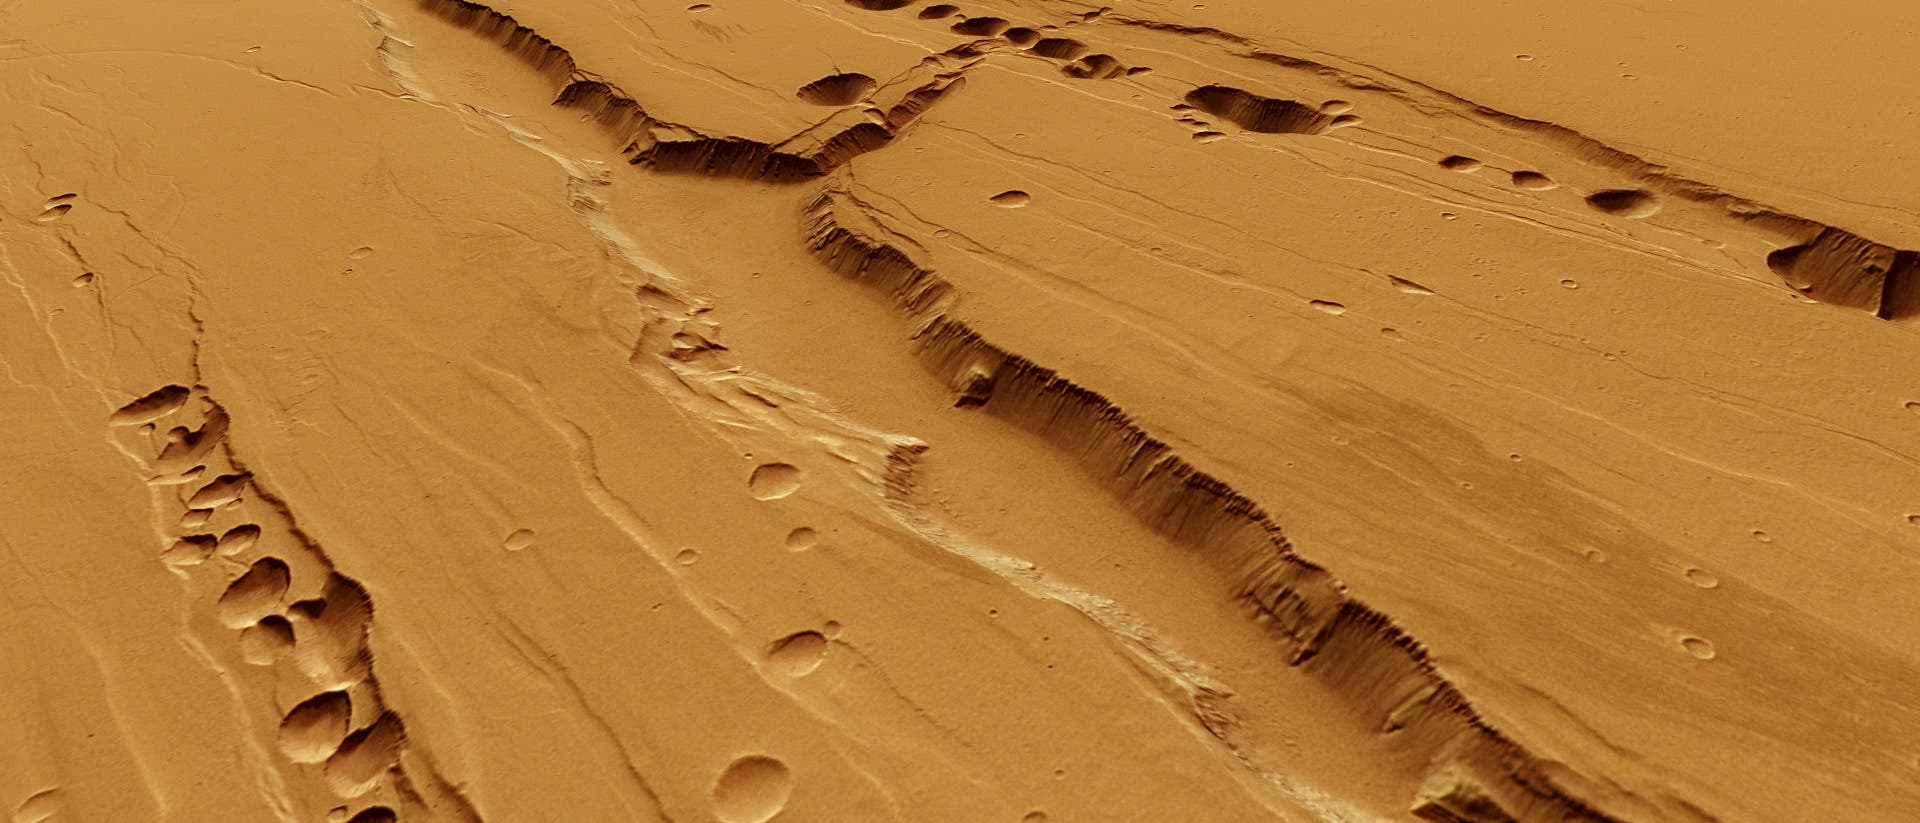 Trichterketten auf dem Mars (Computergrafik)